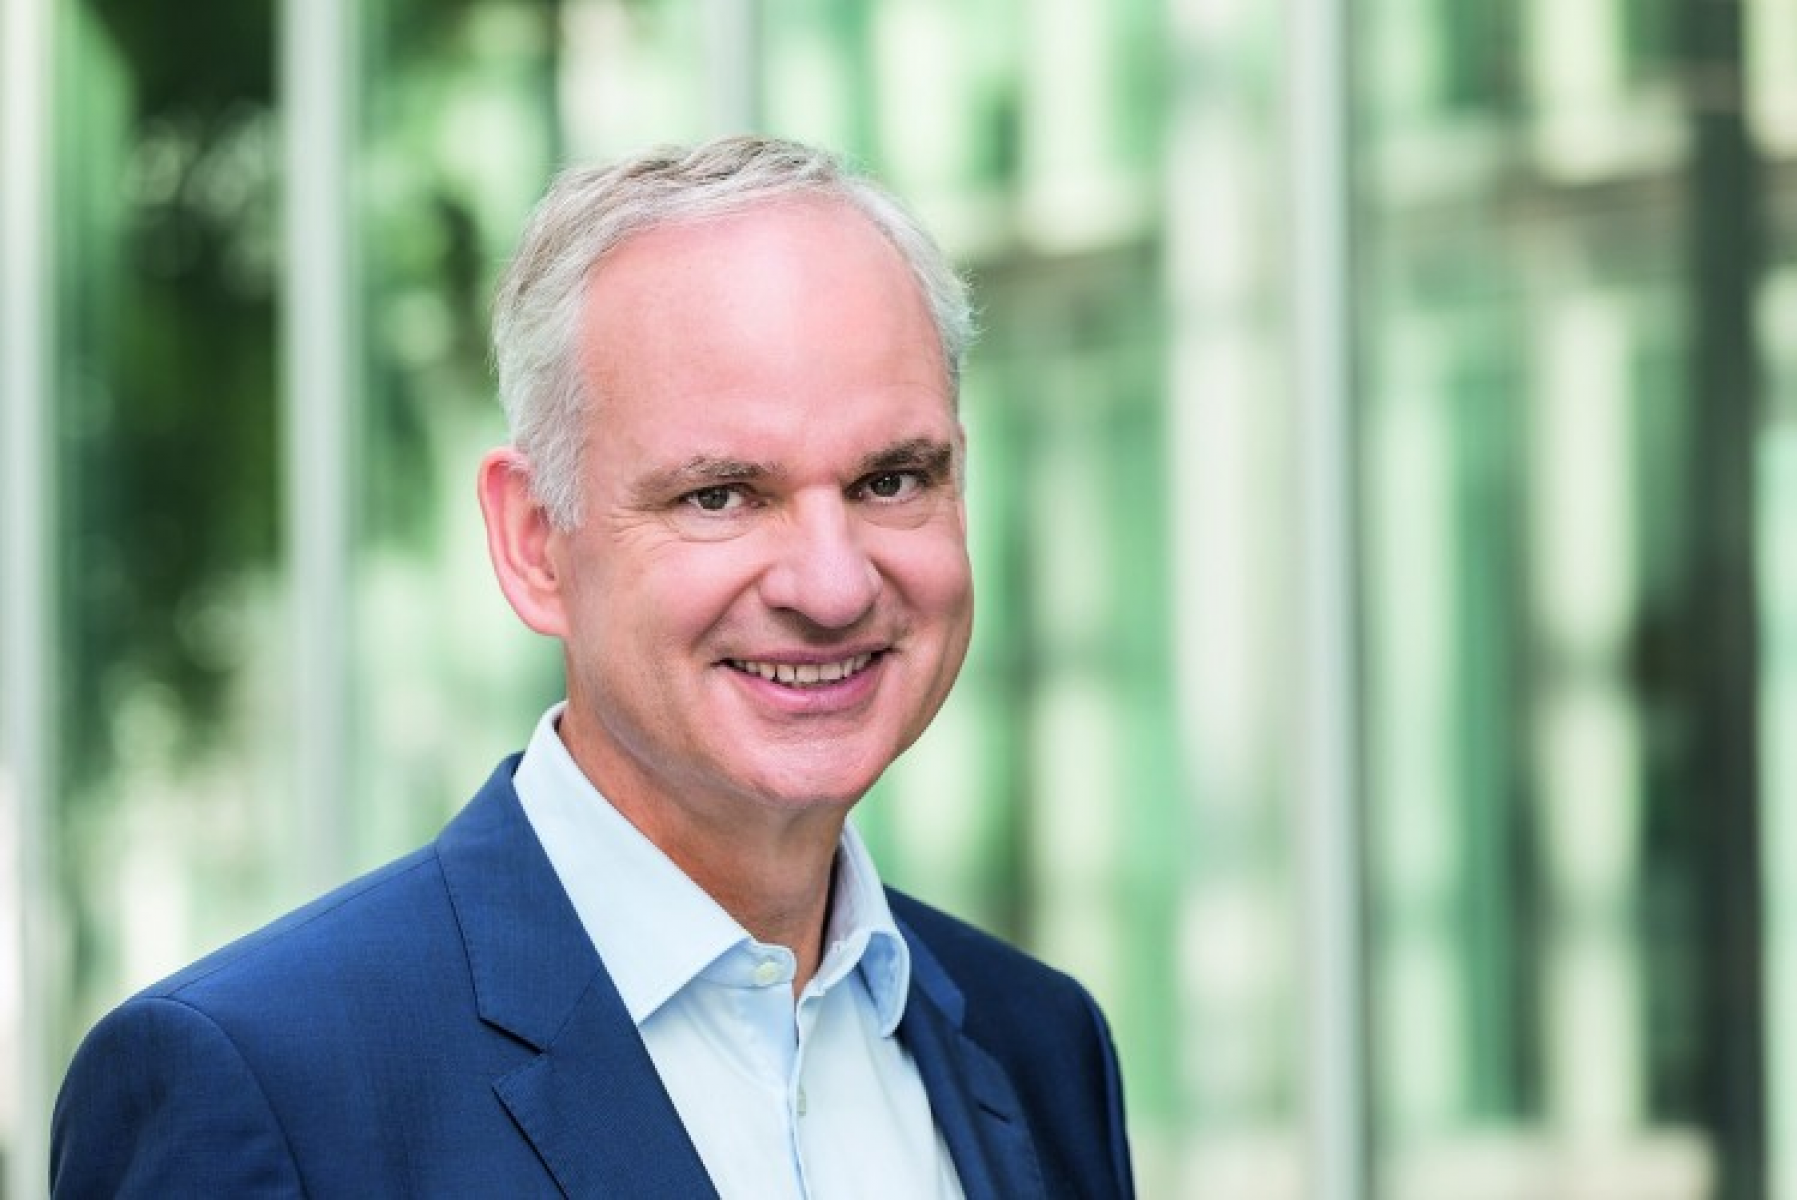 innogy-Aufsichtsrat wählt E.ON-CEO Johannes Teyssen zum Vorsitzenden des Aufsichtsrats und beruft neuen Vorstand mit E.ON-Vorstand Leonhard Birnbaum als Vorstandsvorsitzenden